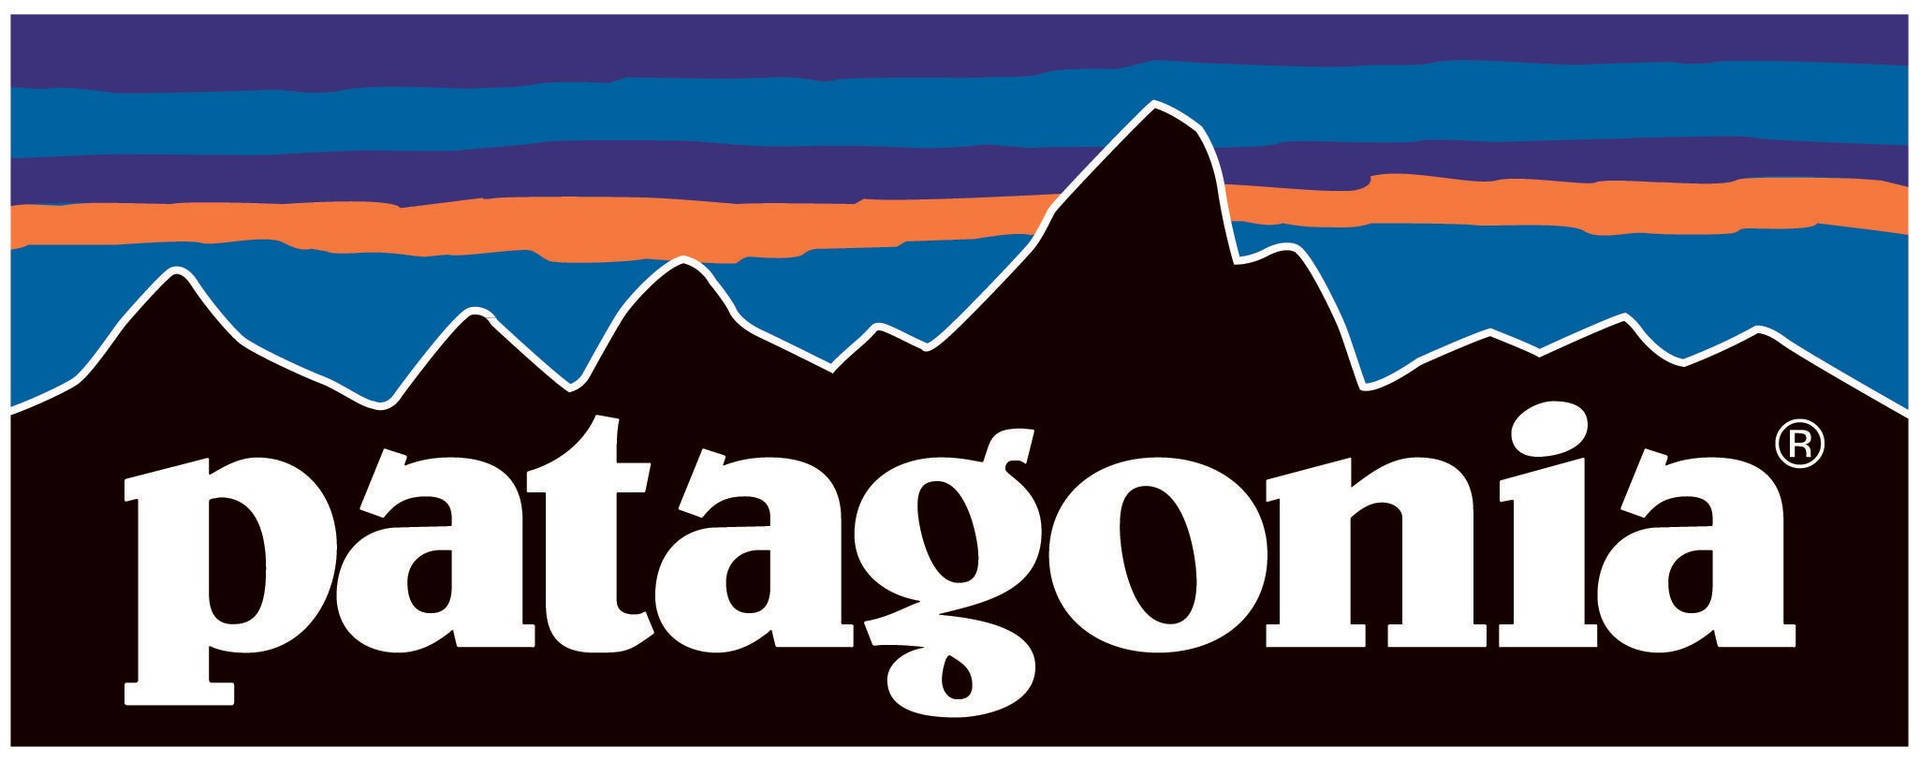 Patagonia Stylized Mountain Logo